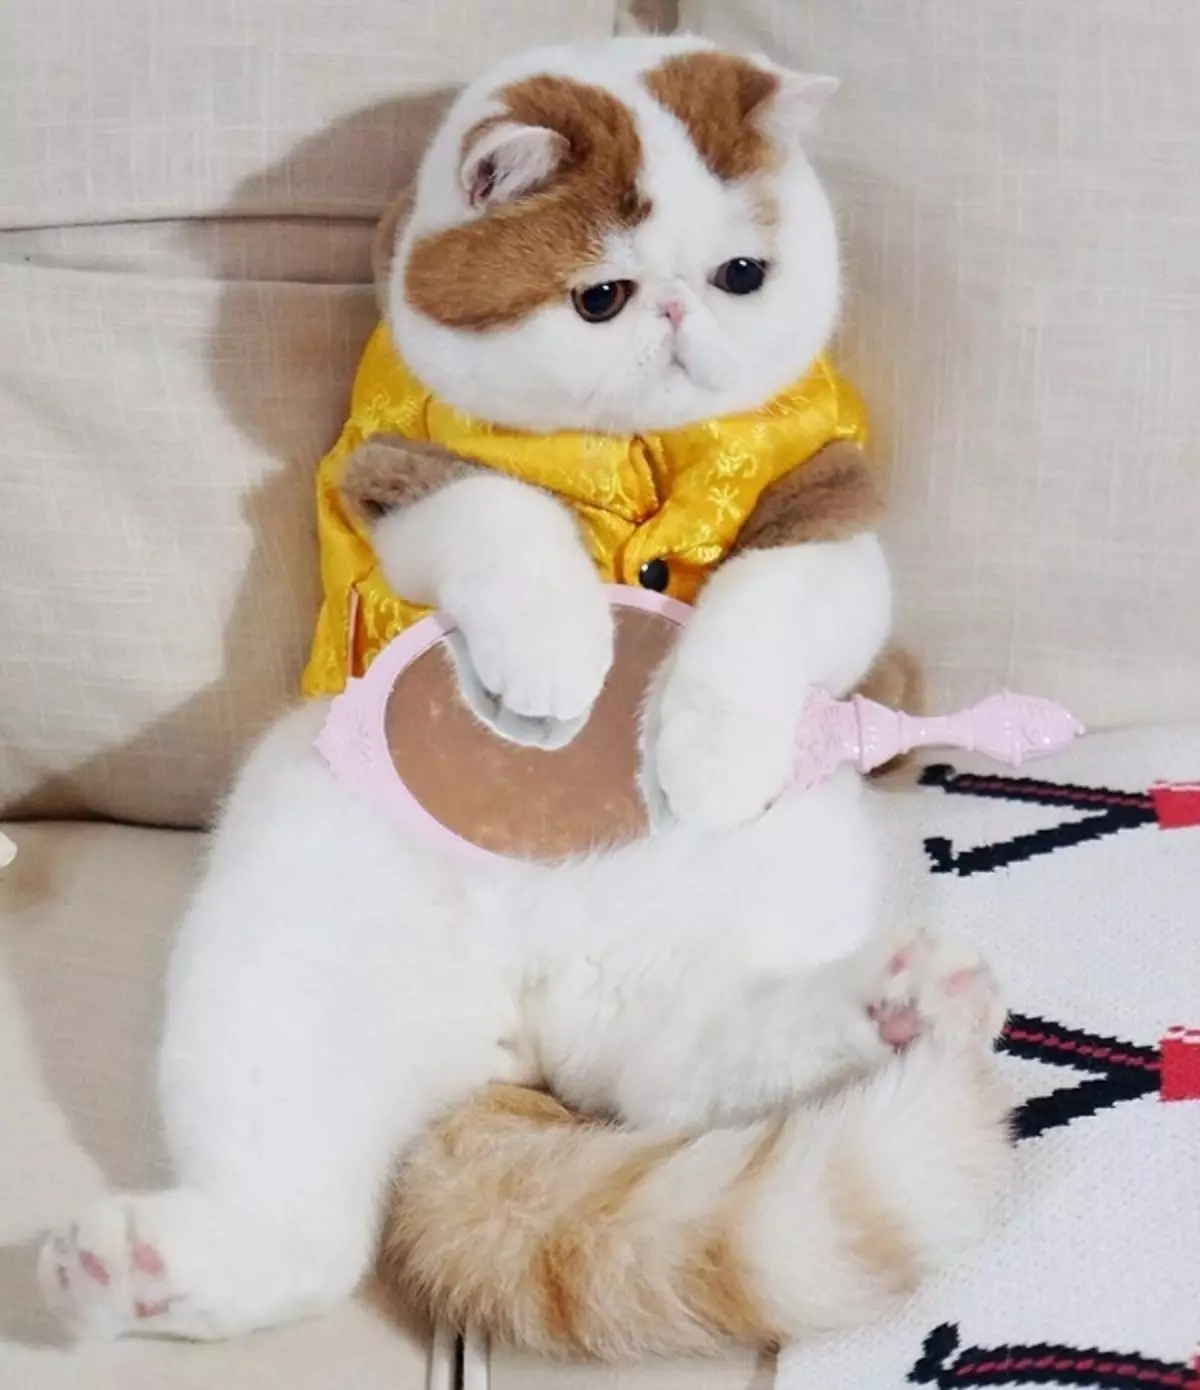 Snapy बिल्लियों (24 फोटो): क्यों इस नस्ल के बिल्लियों लोकप्रिय हो गए हैं? प्रकृति के और विवरण एक विदेशी जापानी बिल्ली की सामग्री की सुविधाएँ 22529_4